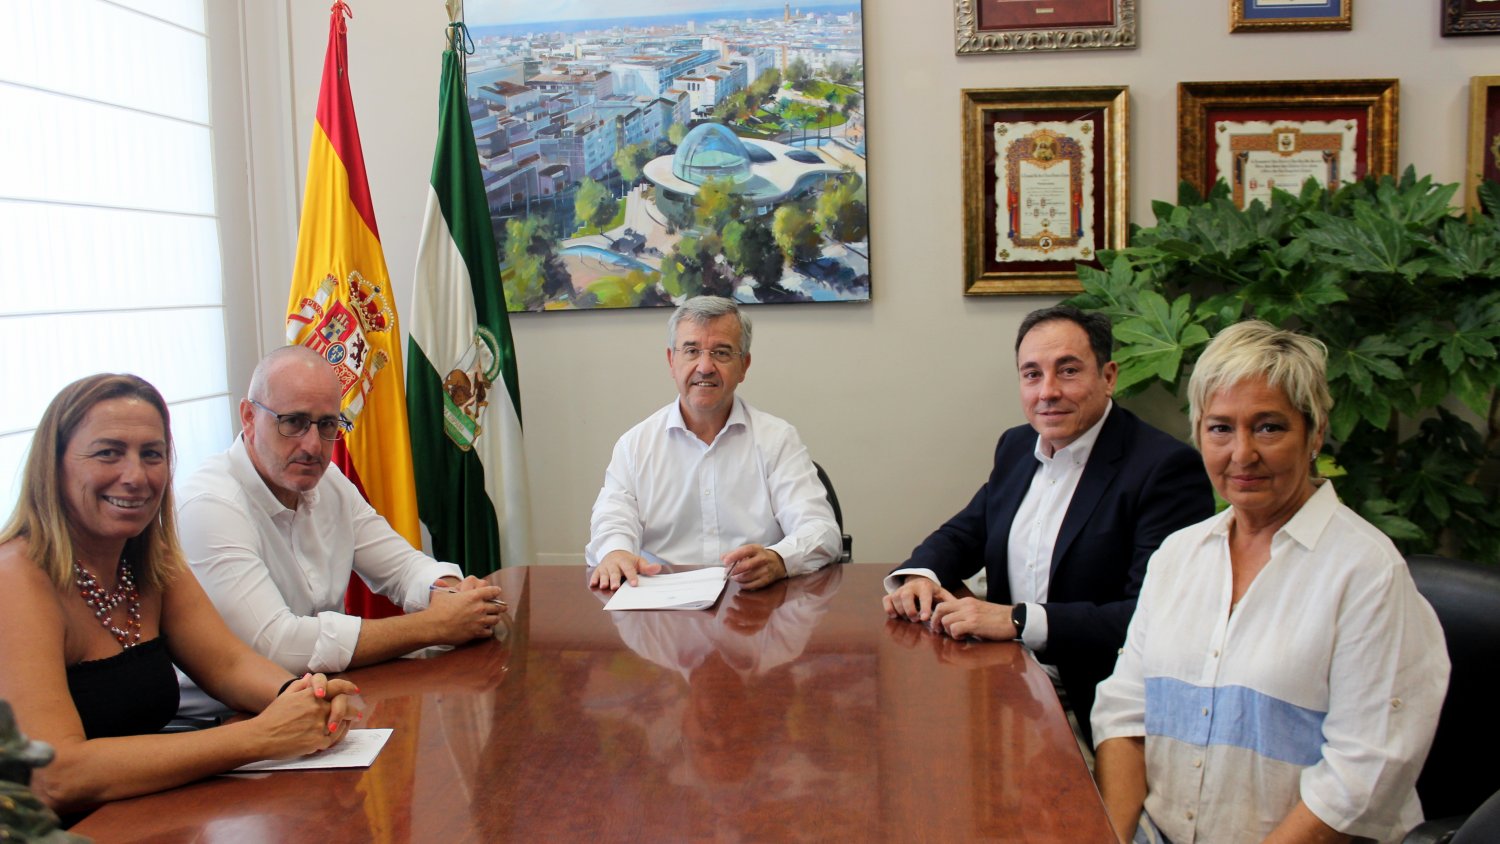 El Ayuntamiento de Estepona ofrece en agosto escuelas de verano para más de 500 alumnos de infantil y primaria